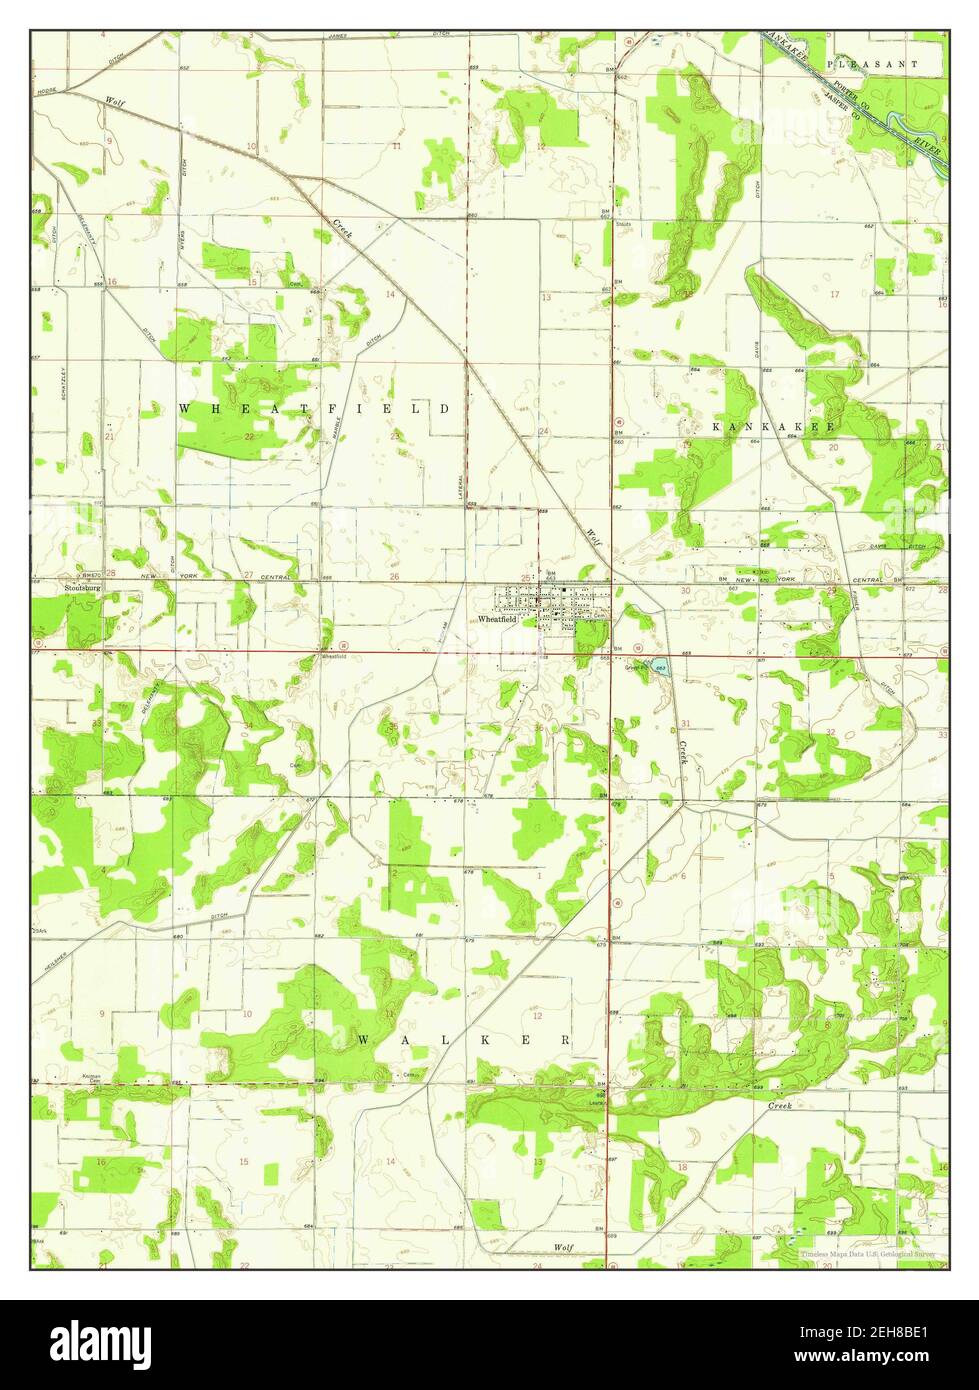 Wheatfield, Indiana, Karte 1957, 1:24000, Vereinigte Staaten von Amerika von Timeless Maps, Daten U.S. Geological Survey Stockfoto